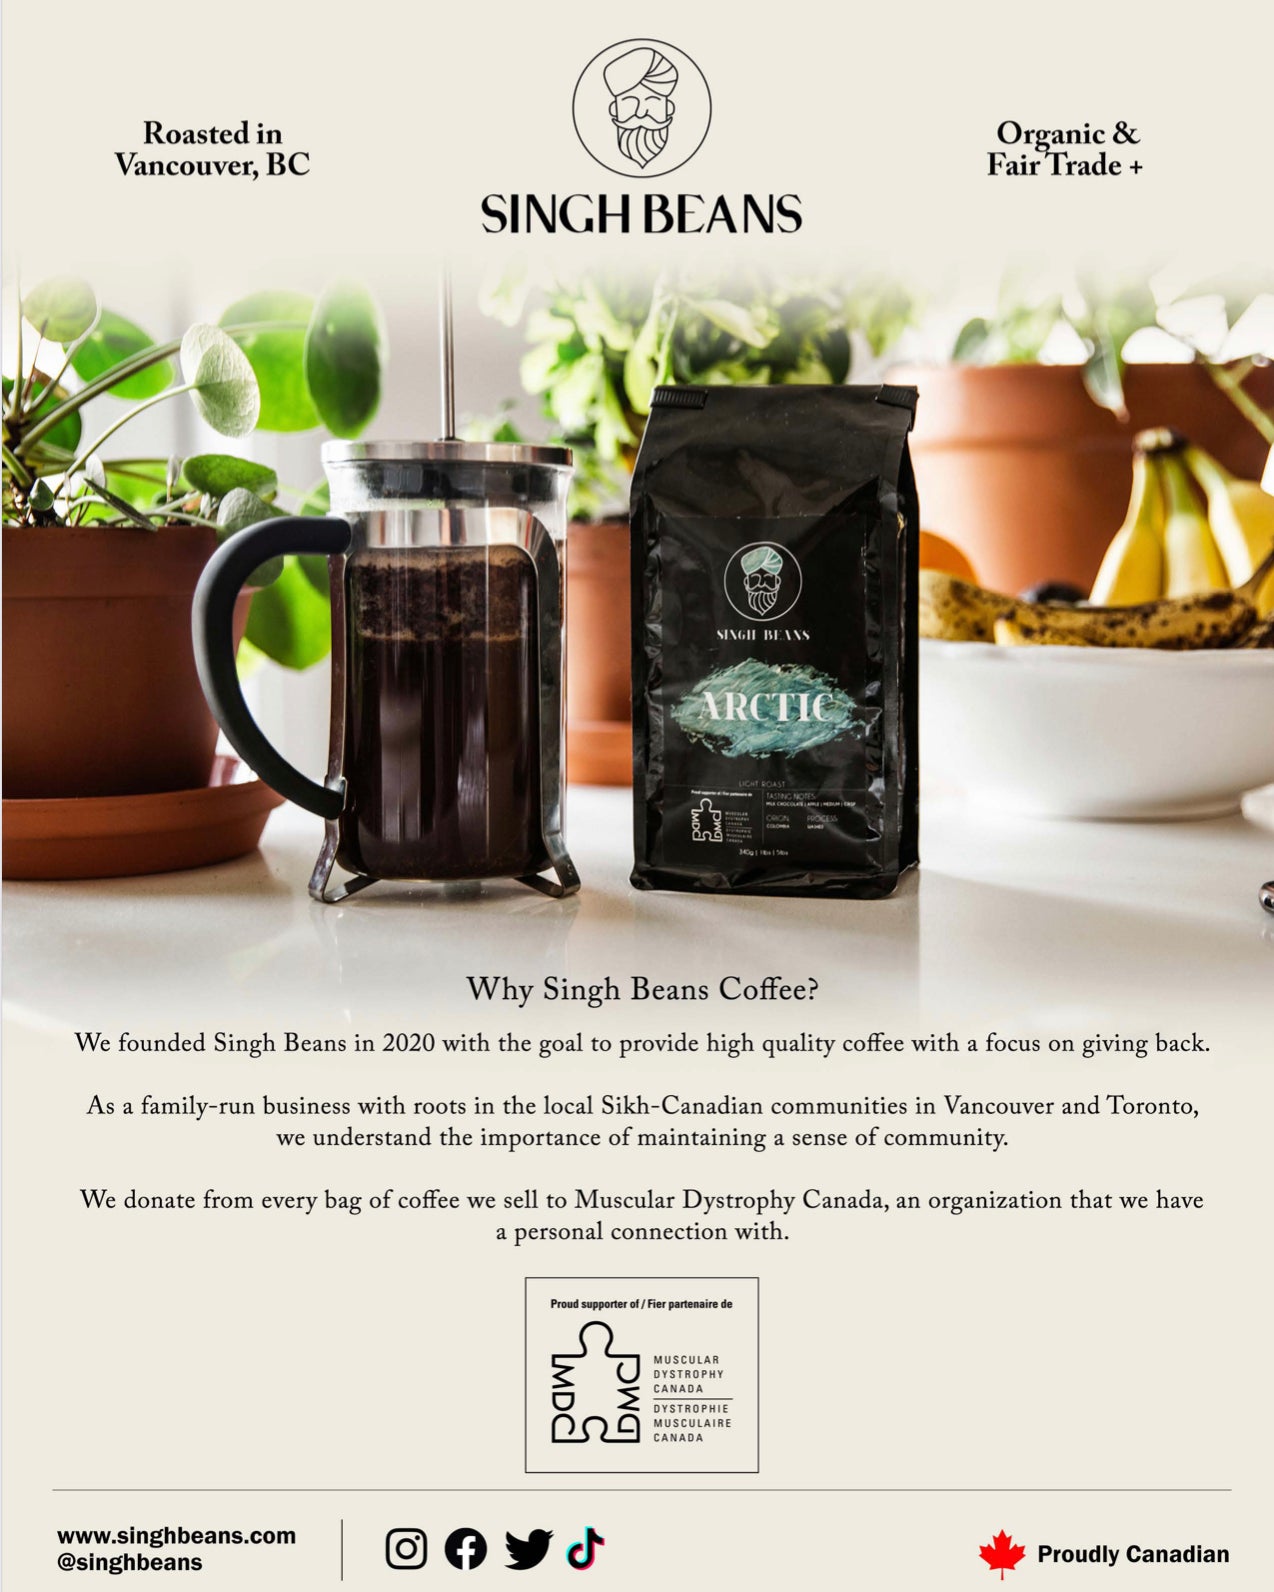 Singh Beans Coffee